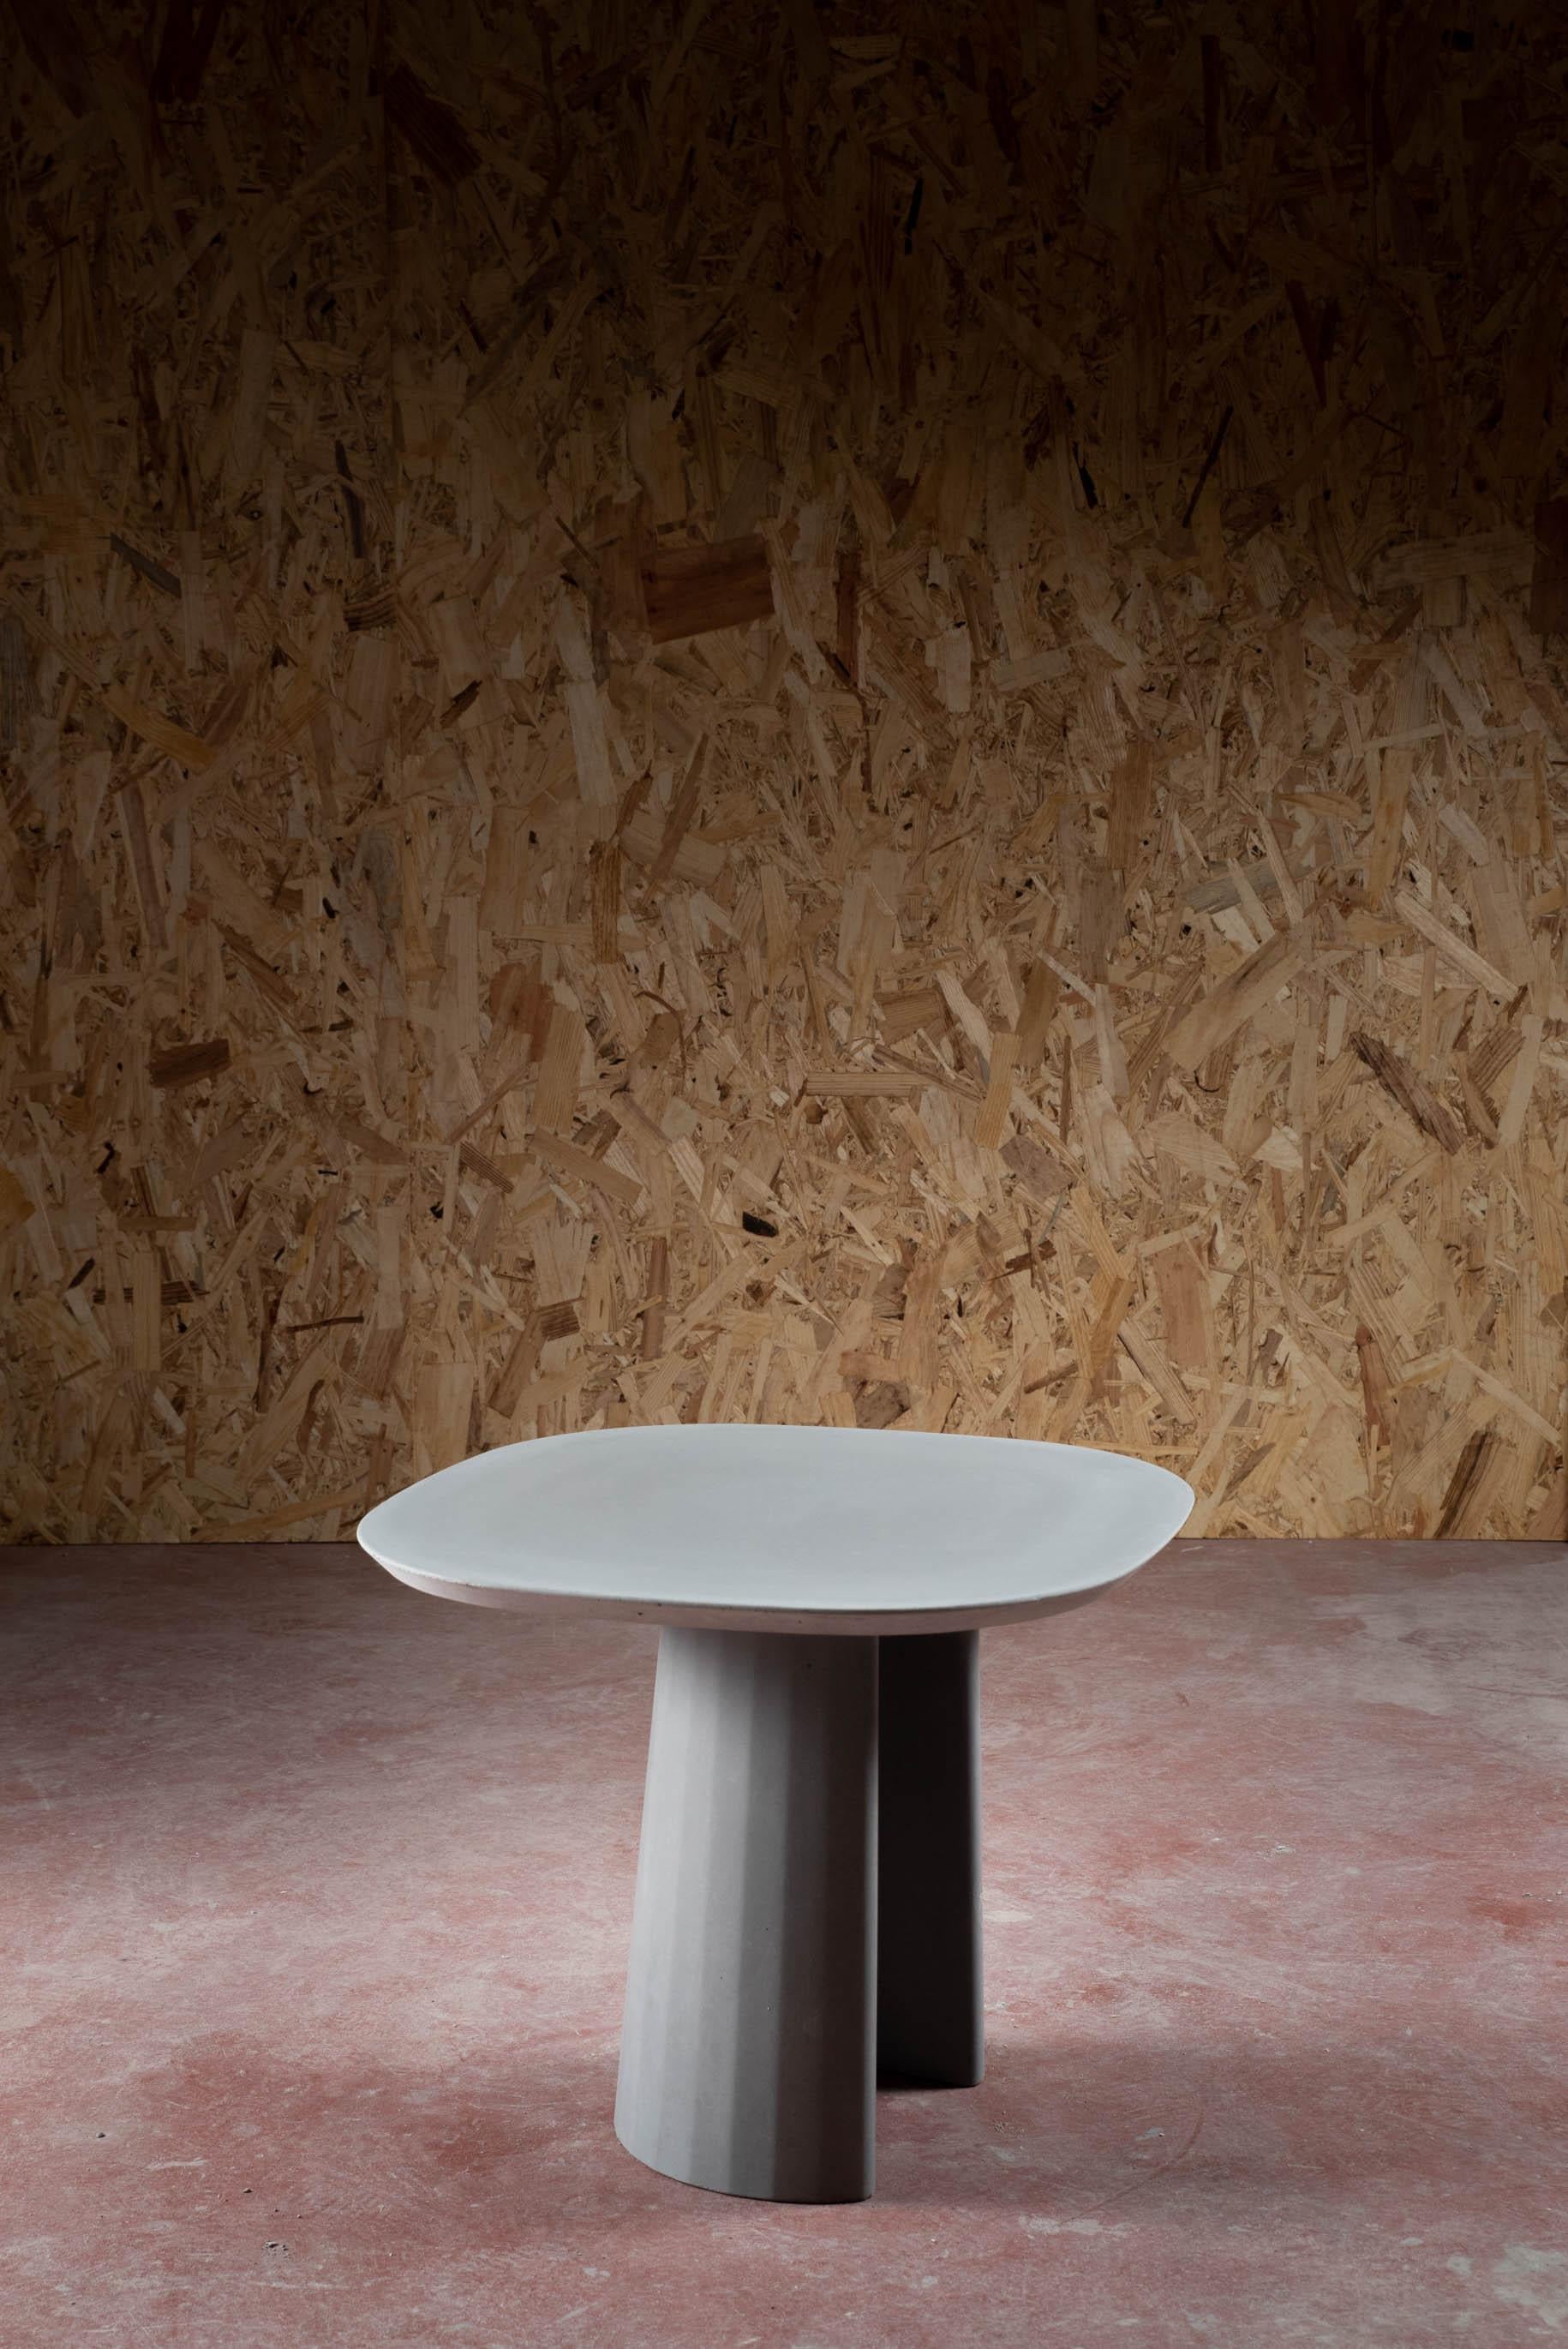 Classical Roman Fusto Domestic Landscape Concrete Coffee Side Table Green Grey Cement Mod.I For Sale